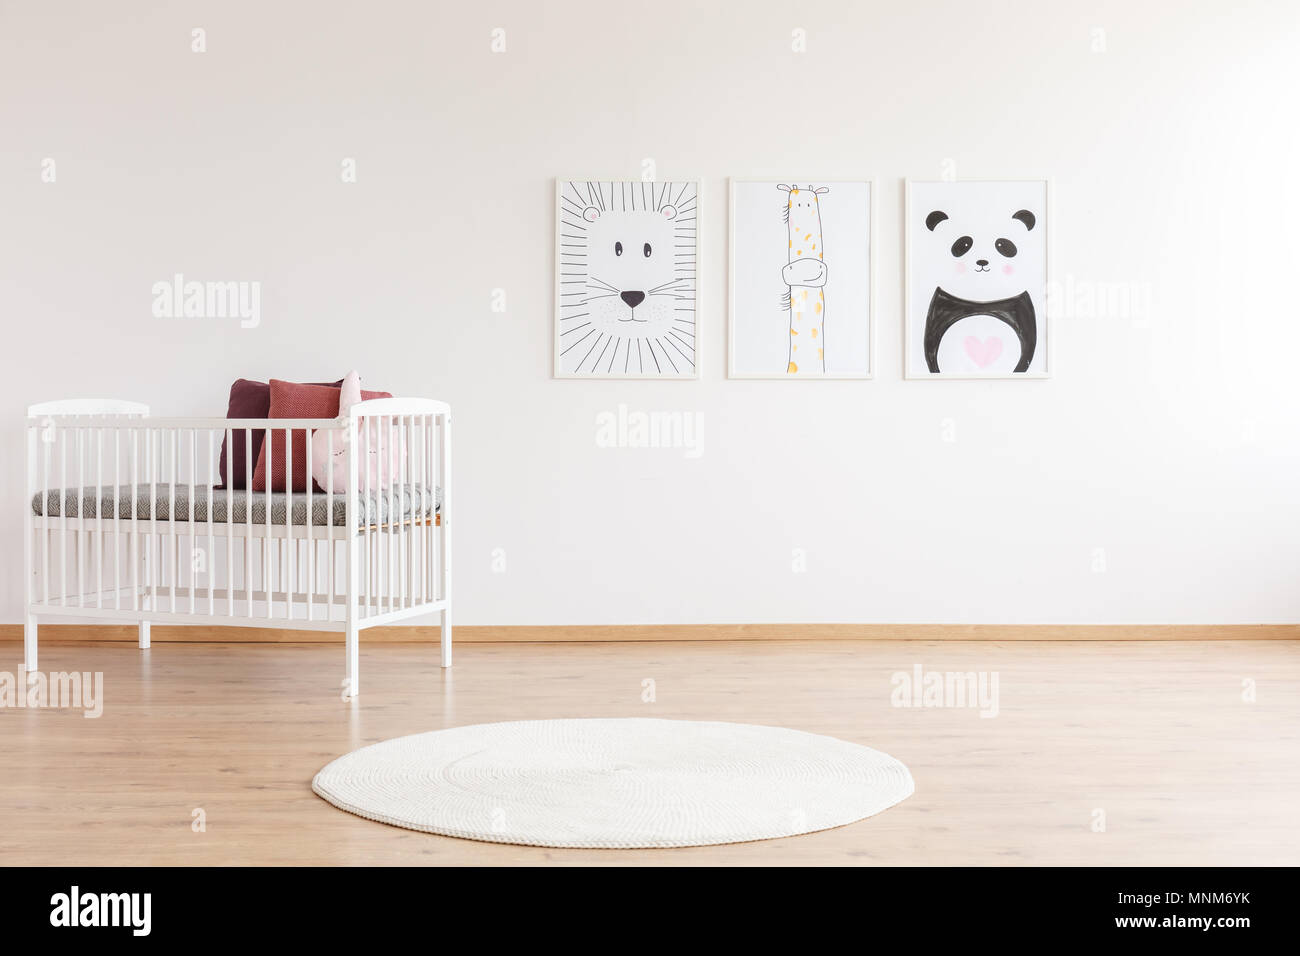 Tapis rond blanc à côté du lit d'enfant avec des oreillers contre mur blanc avec des affiches et copy space Banque D'Images